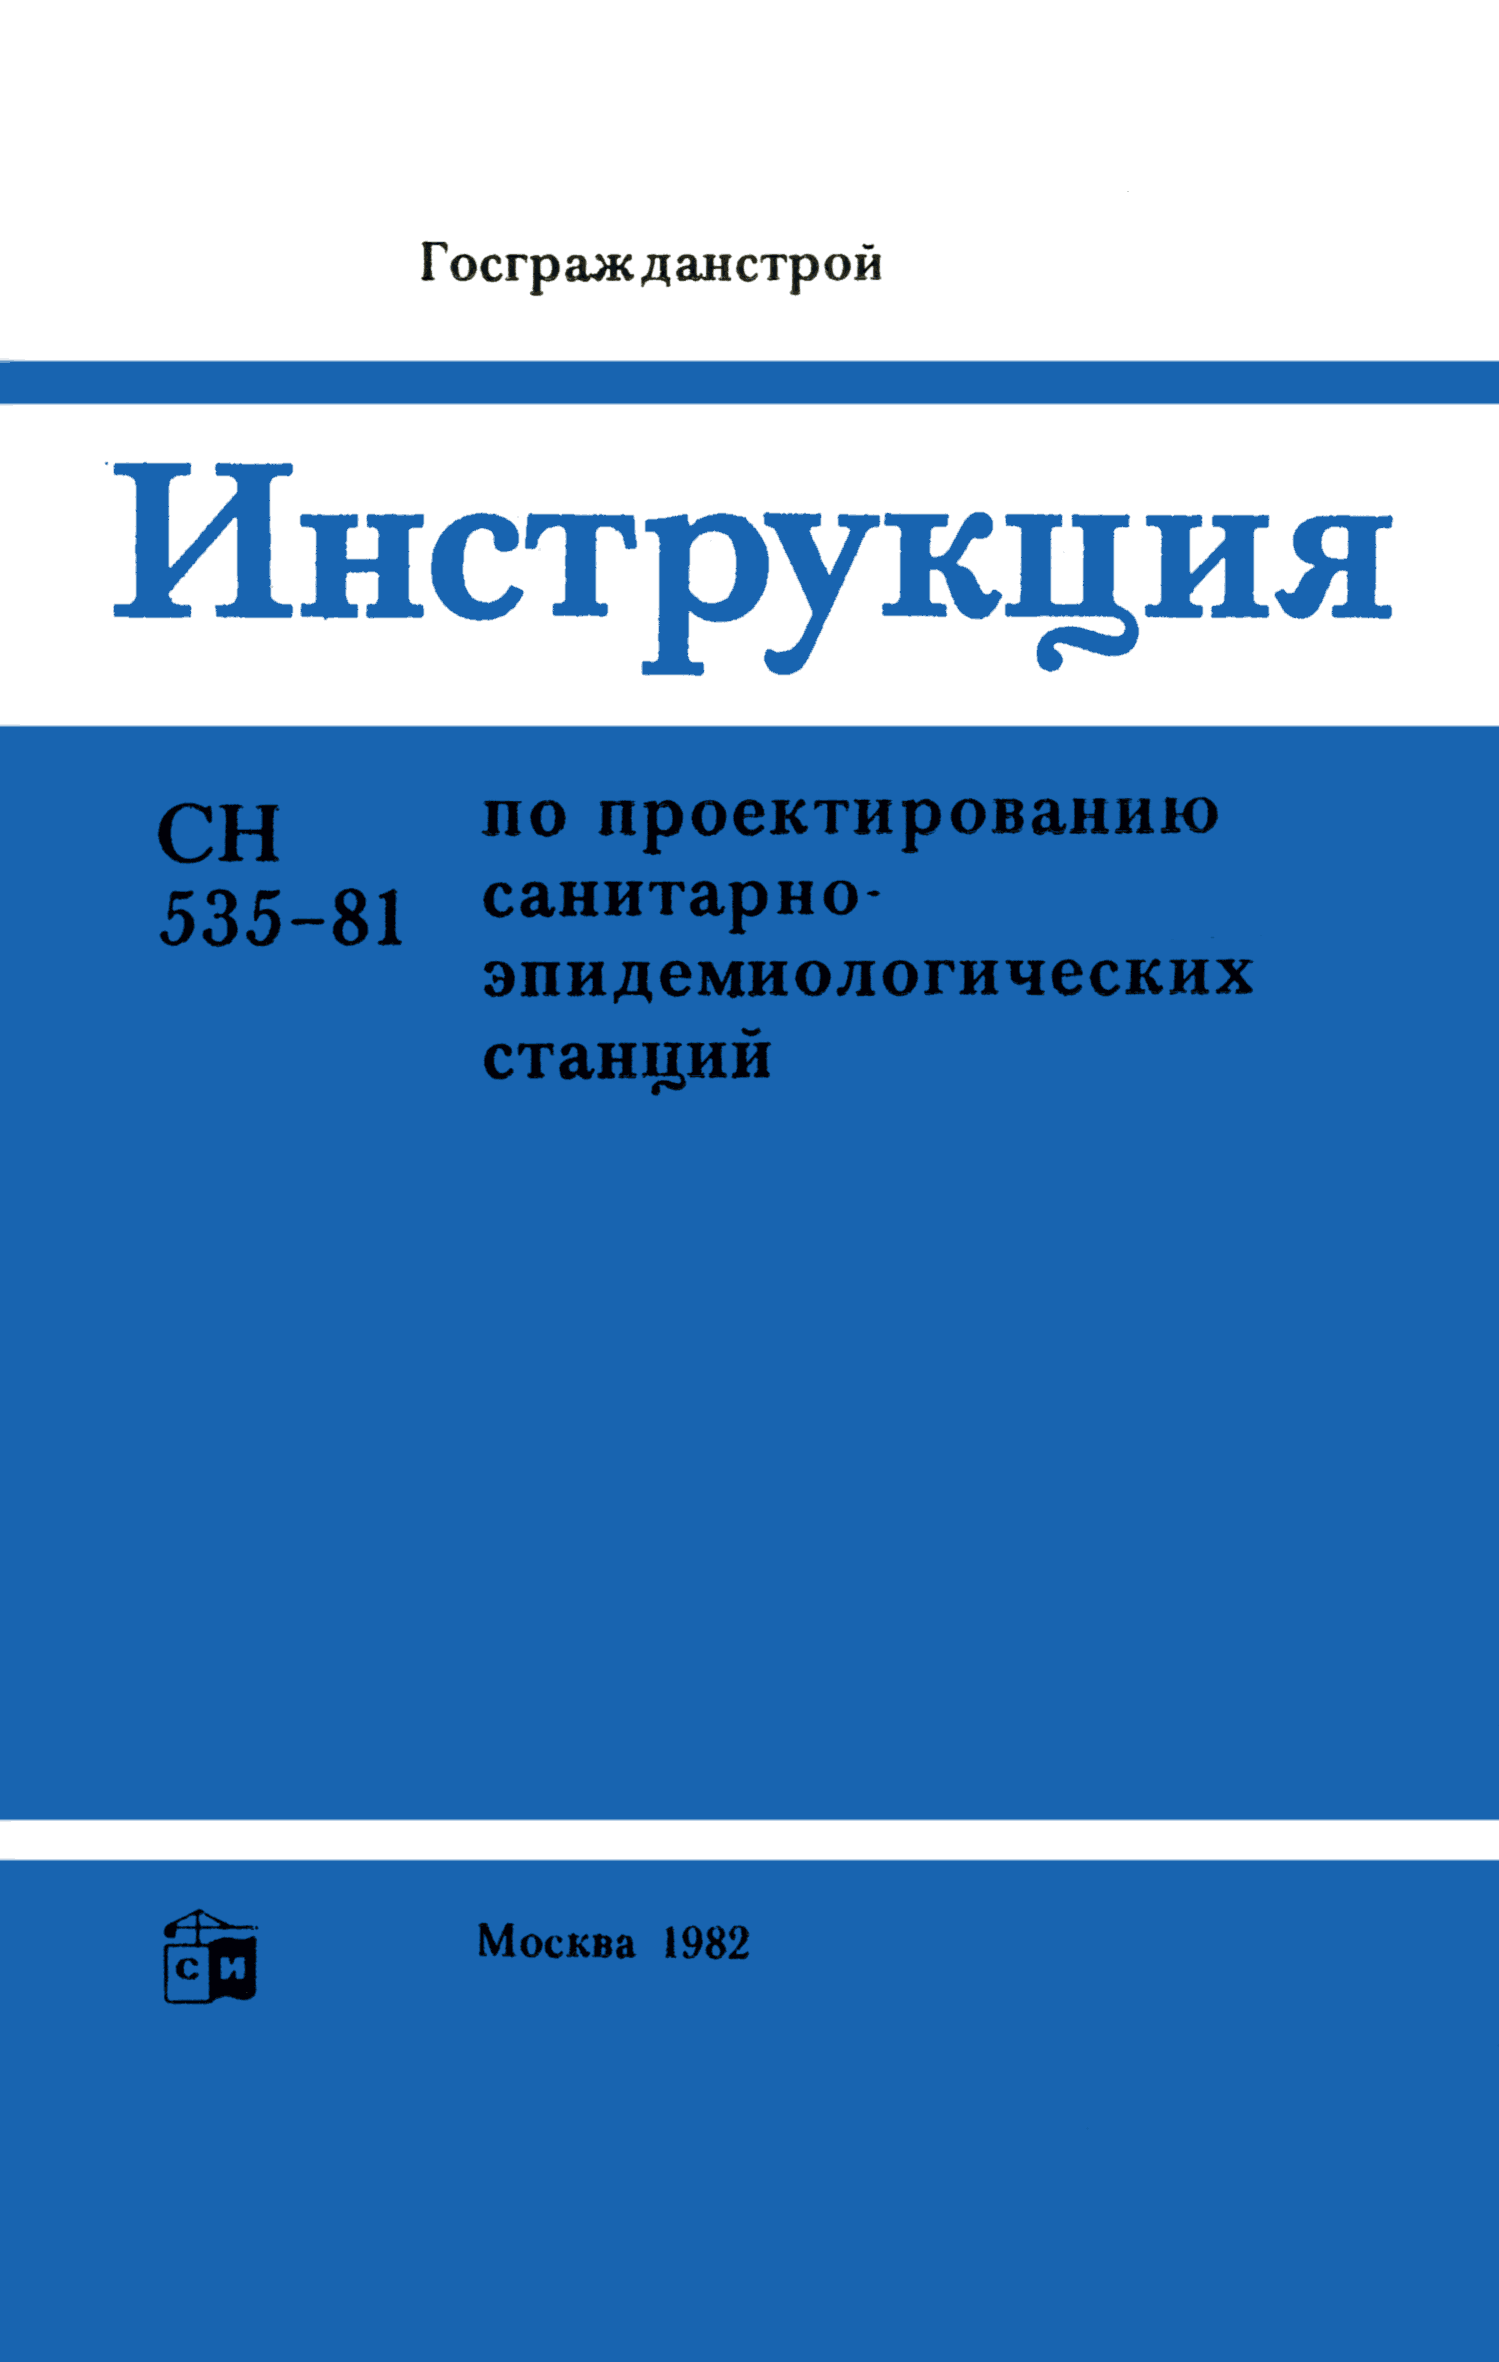 СН 535-81